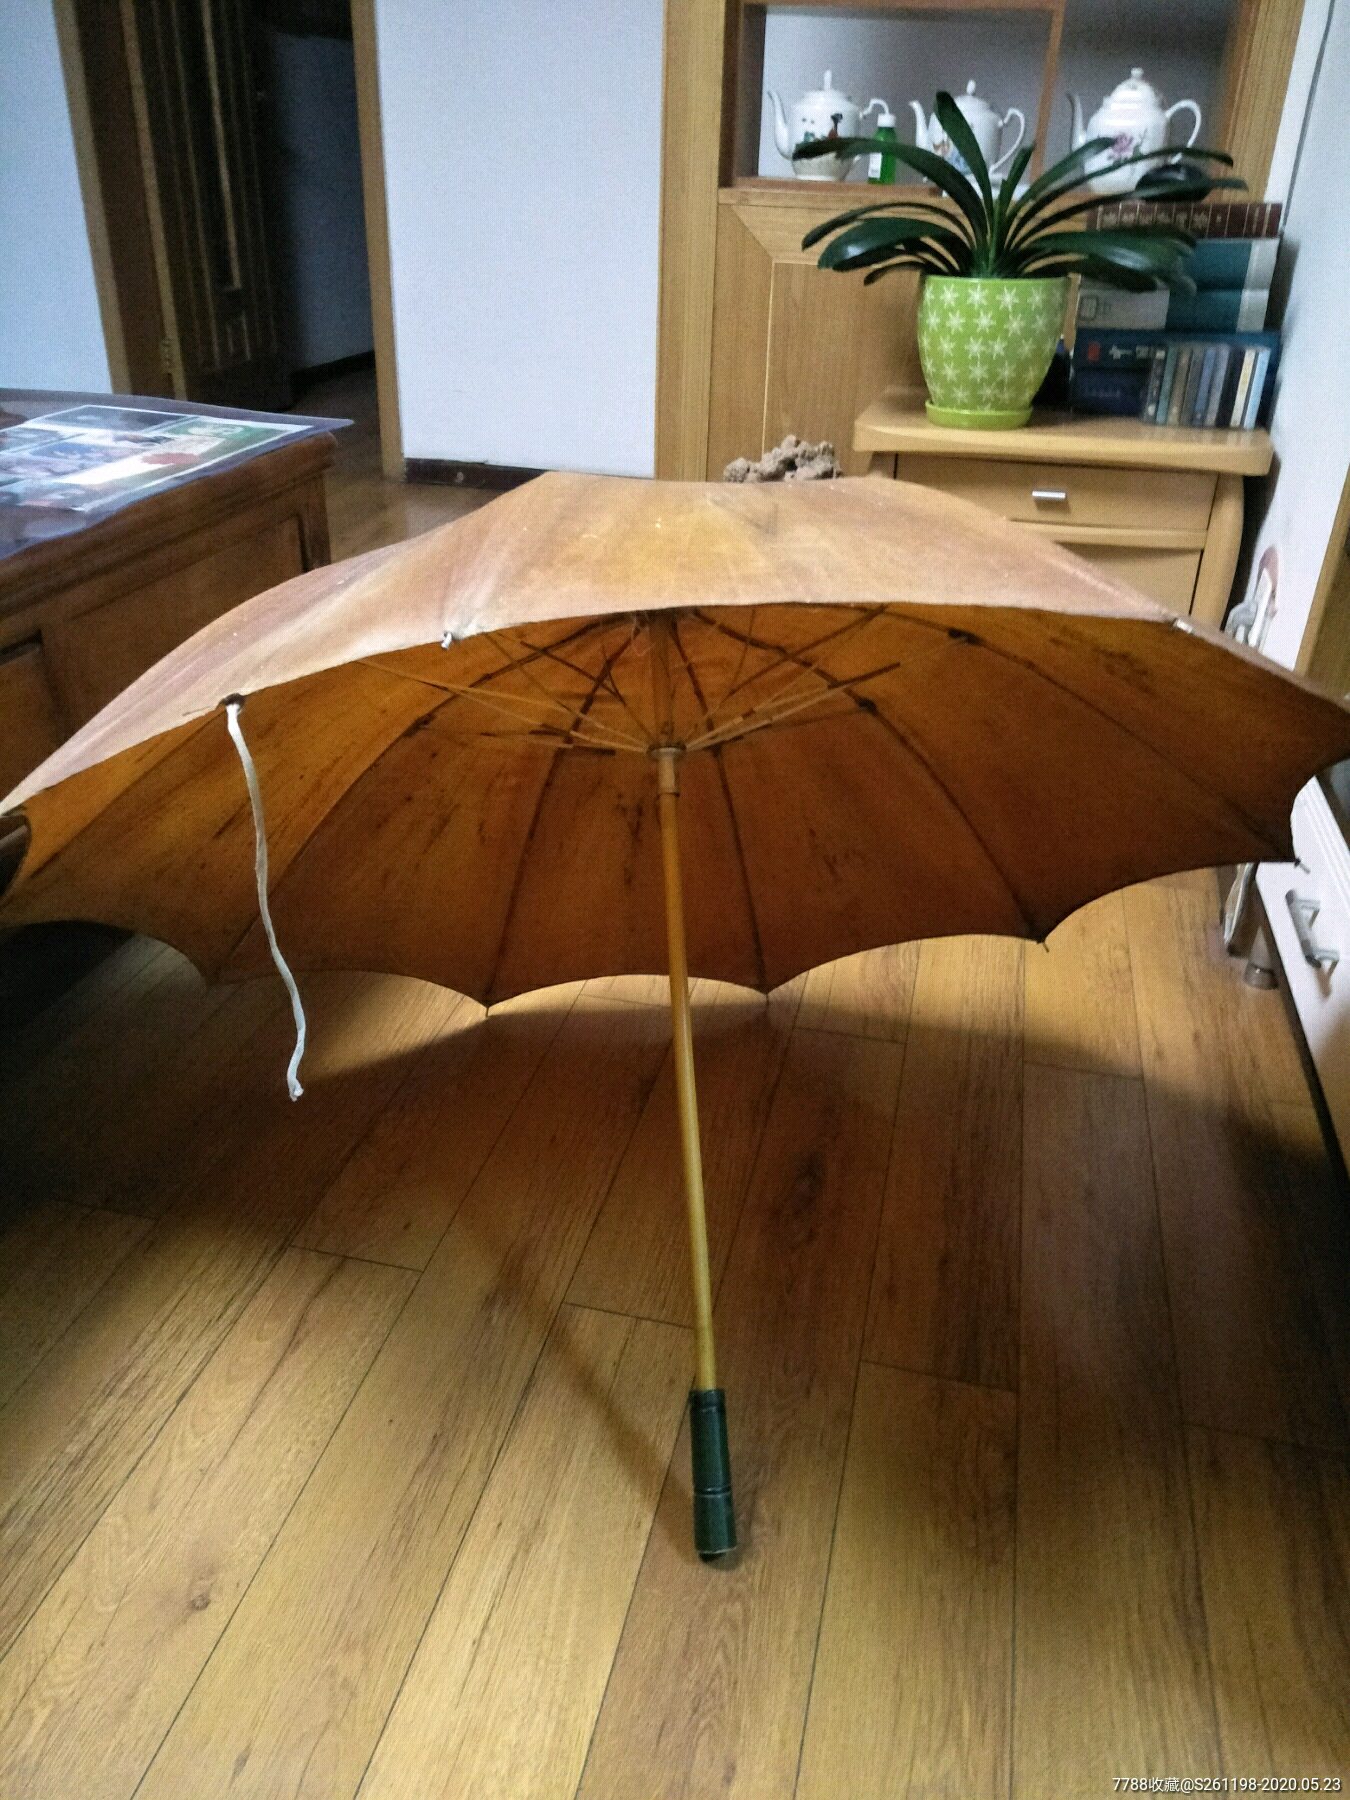 老式黄油布雨伞图片